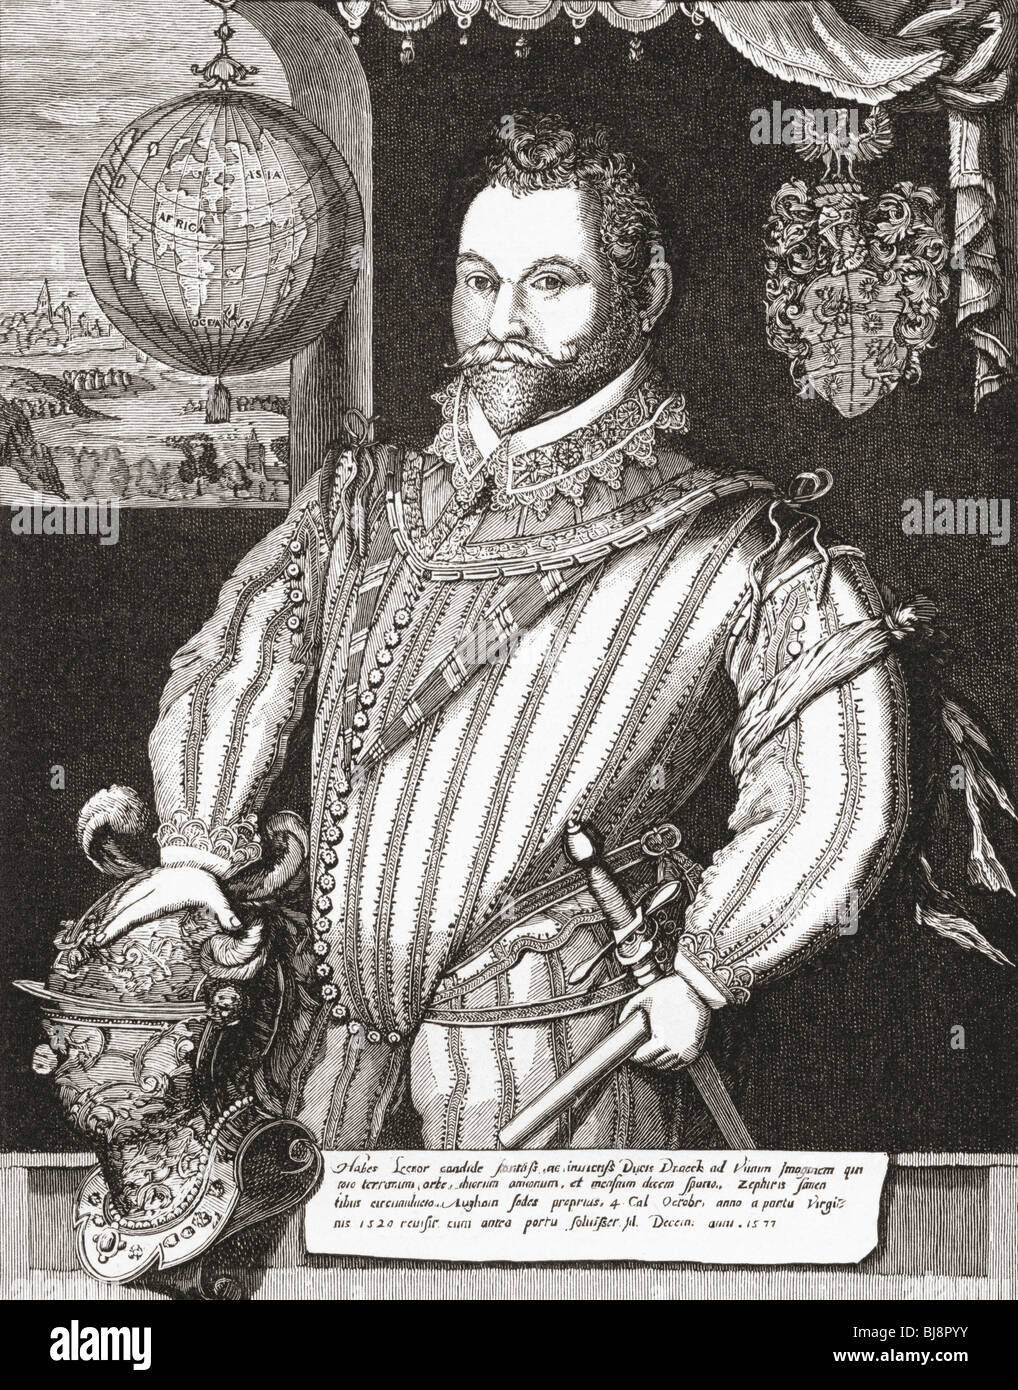 Sir Francis Drake, Vice Admiral, 1540 to 1596. Stock Photo